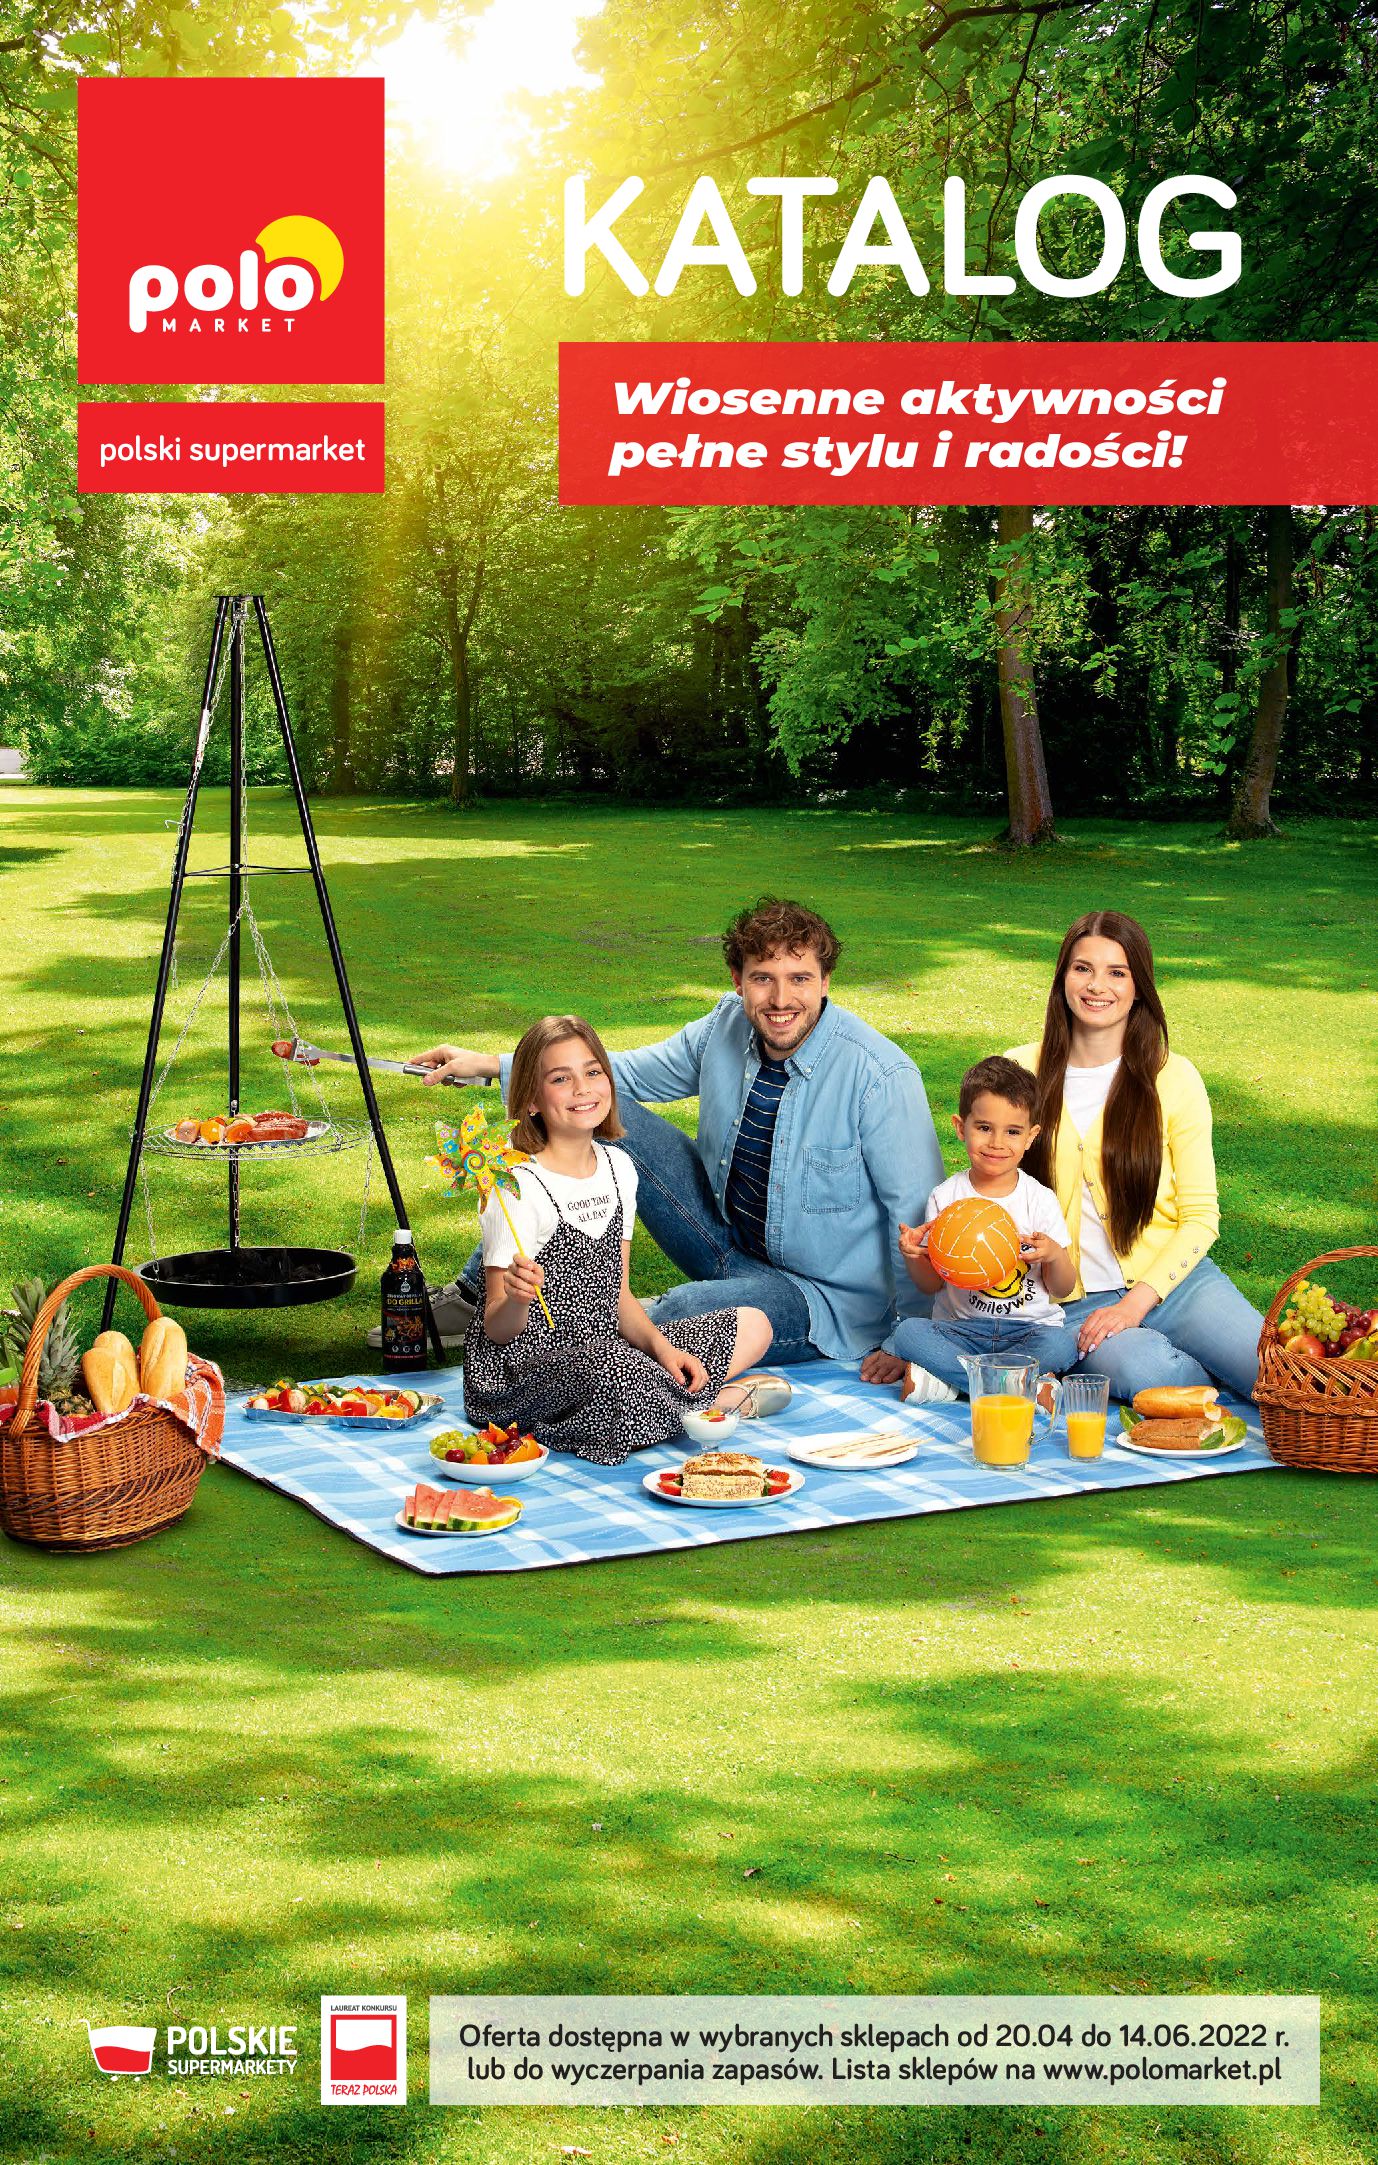 Gazetka Polomarket: Gazetka POLOmarket - katalog Wiosenne aktywności pełne stylu i radości! 2022-04-20 page-1